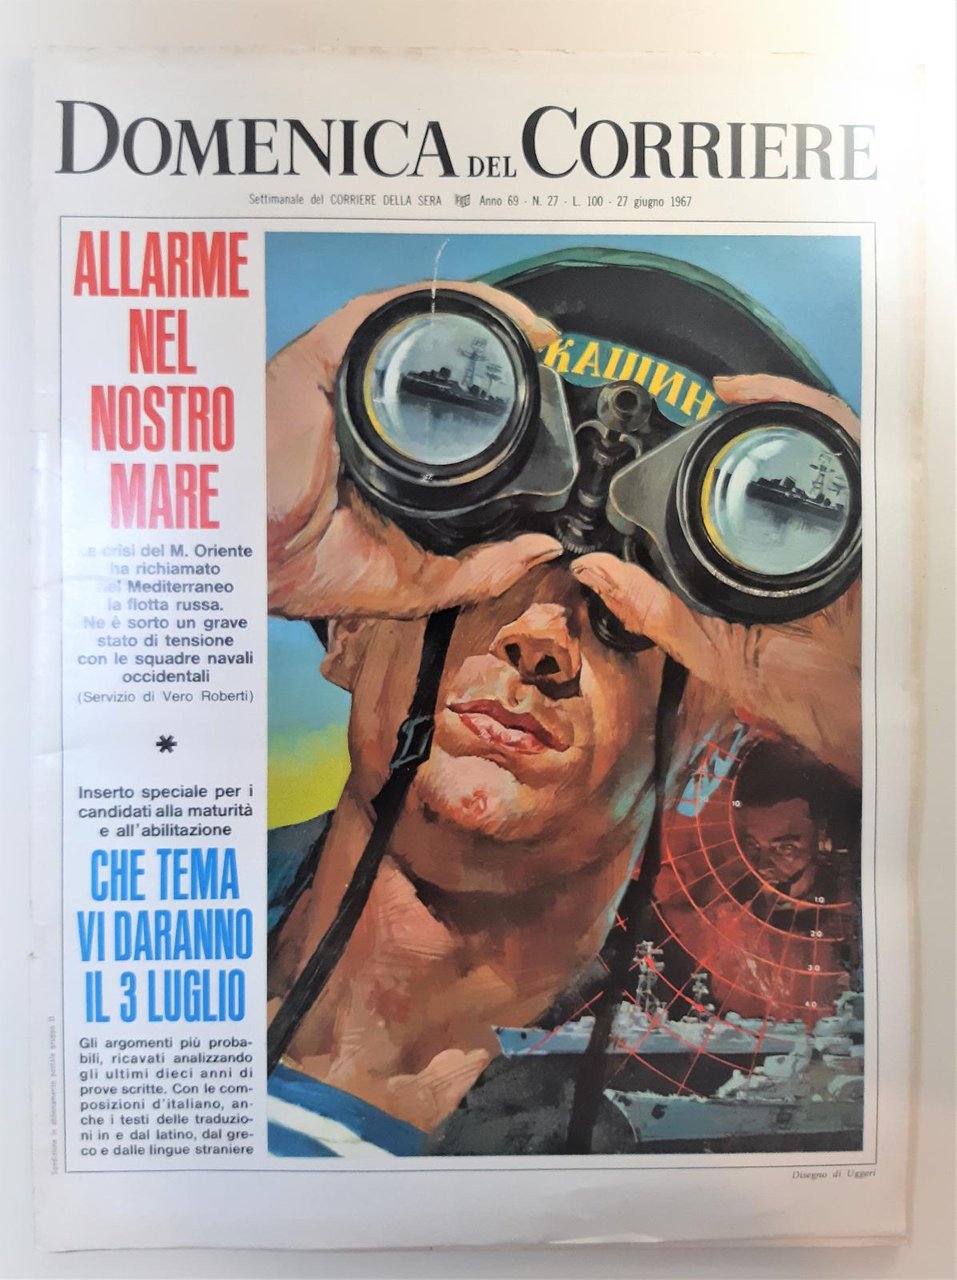 Domenica del Corriere numero 27 27 giugno 1967